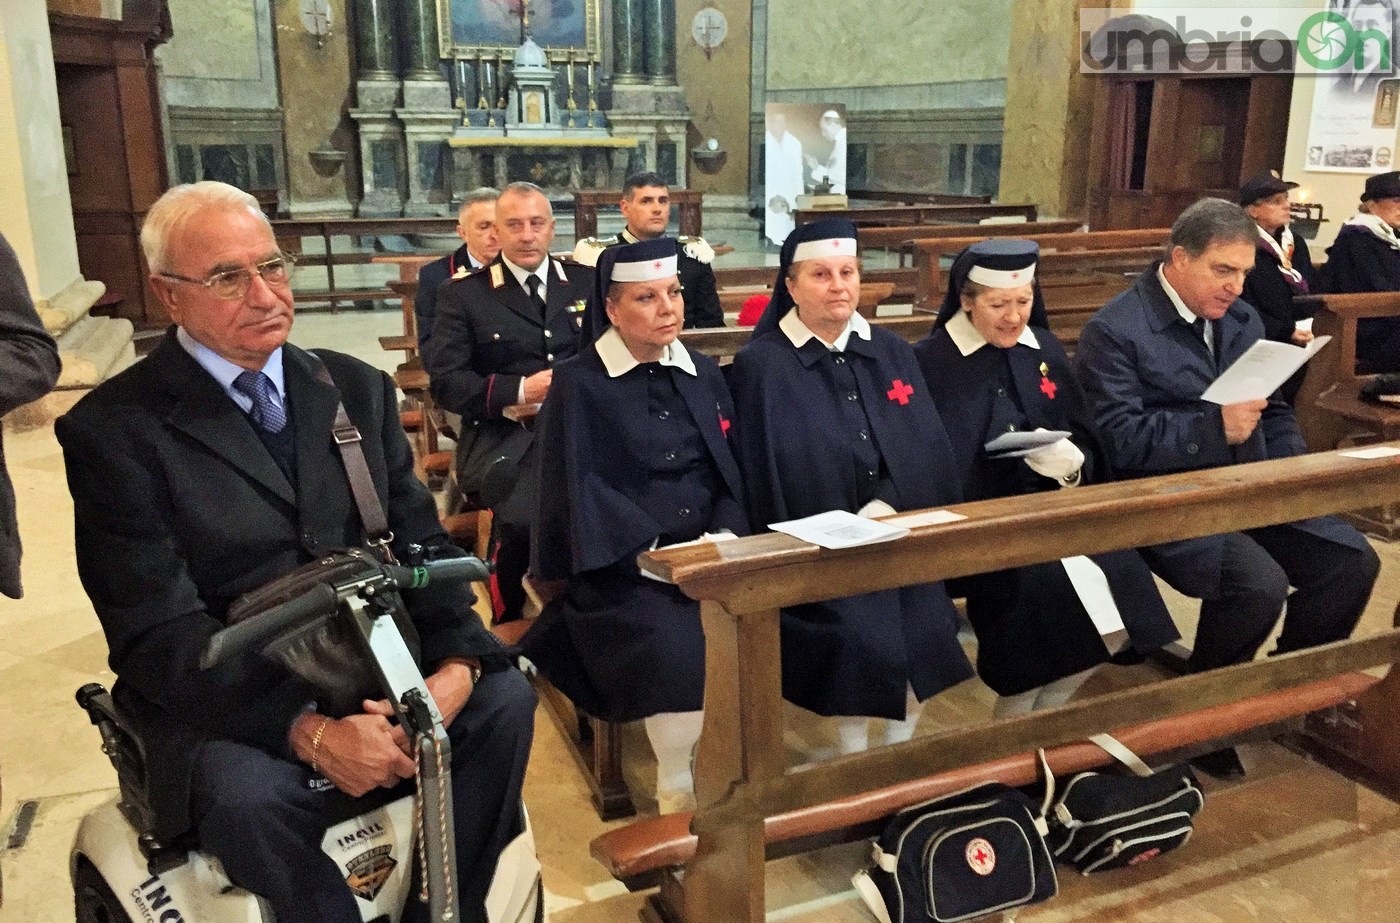 Virgo-Fidelis-carabinieri-Terni-in-cattedrale-21-novembre-2016-8